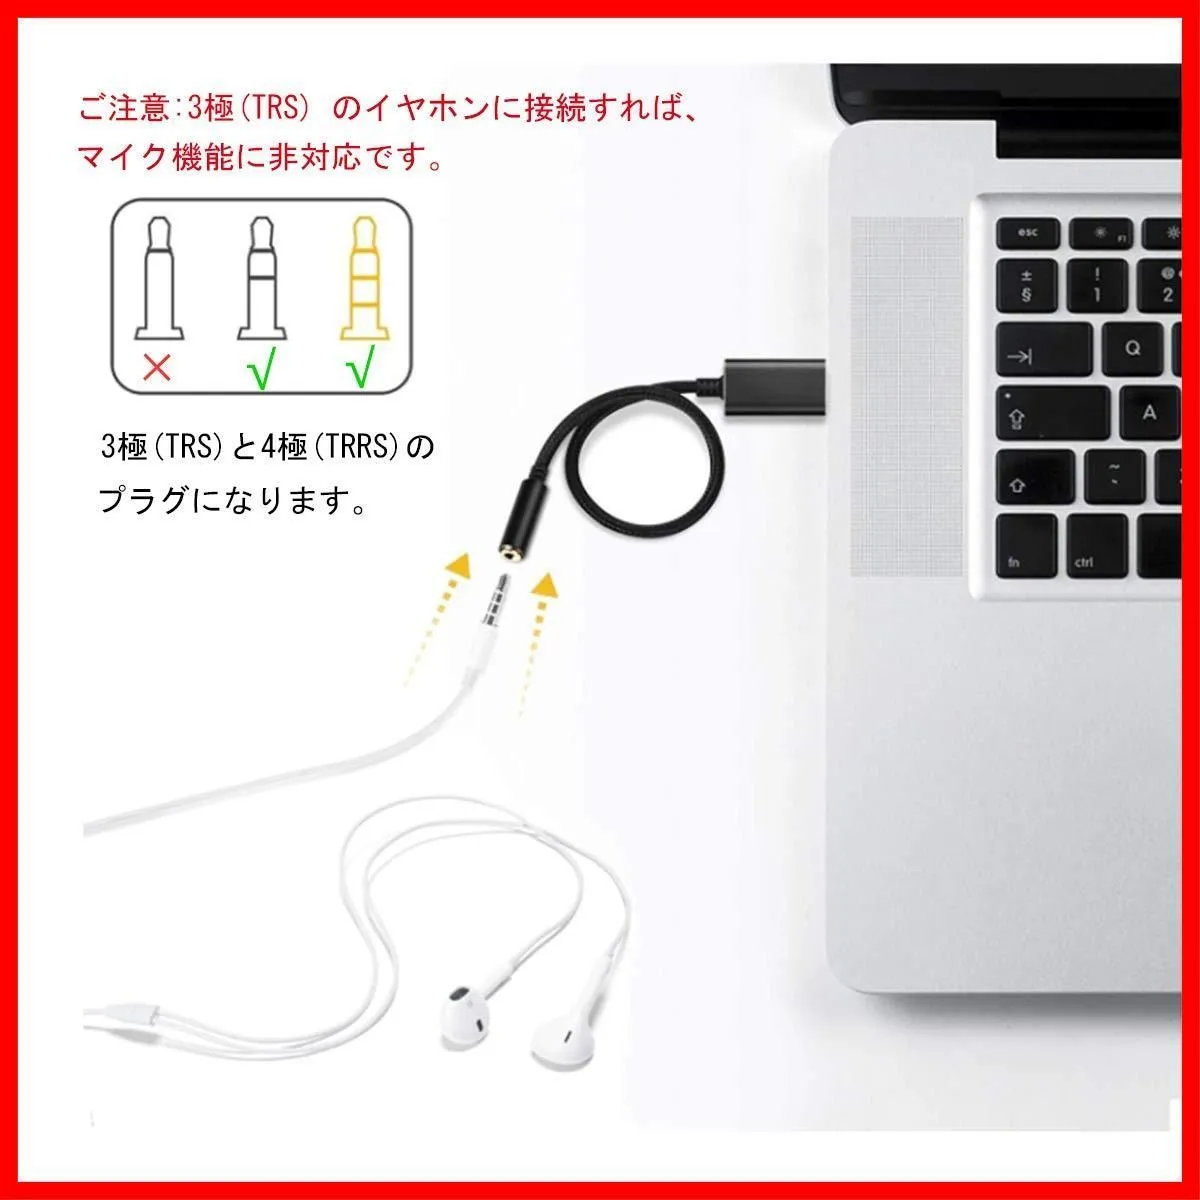 特売】YFFSFDC 変換アダプタ USB to 3.5mm 外付けサウンドカード